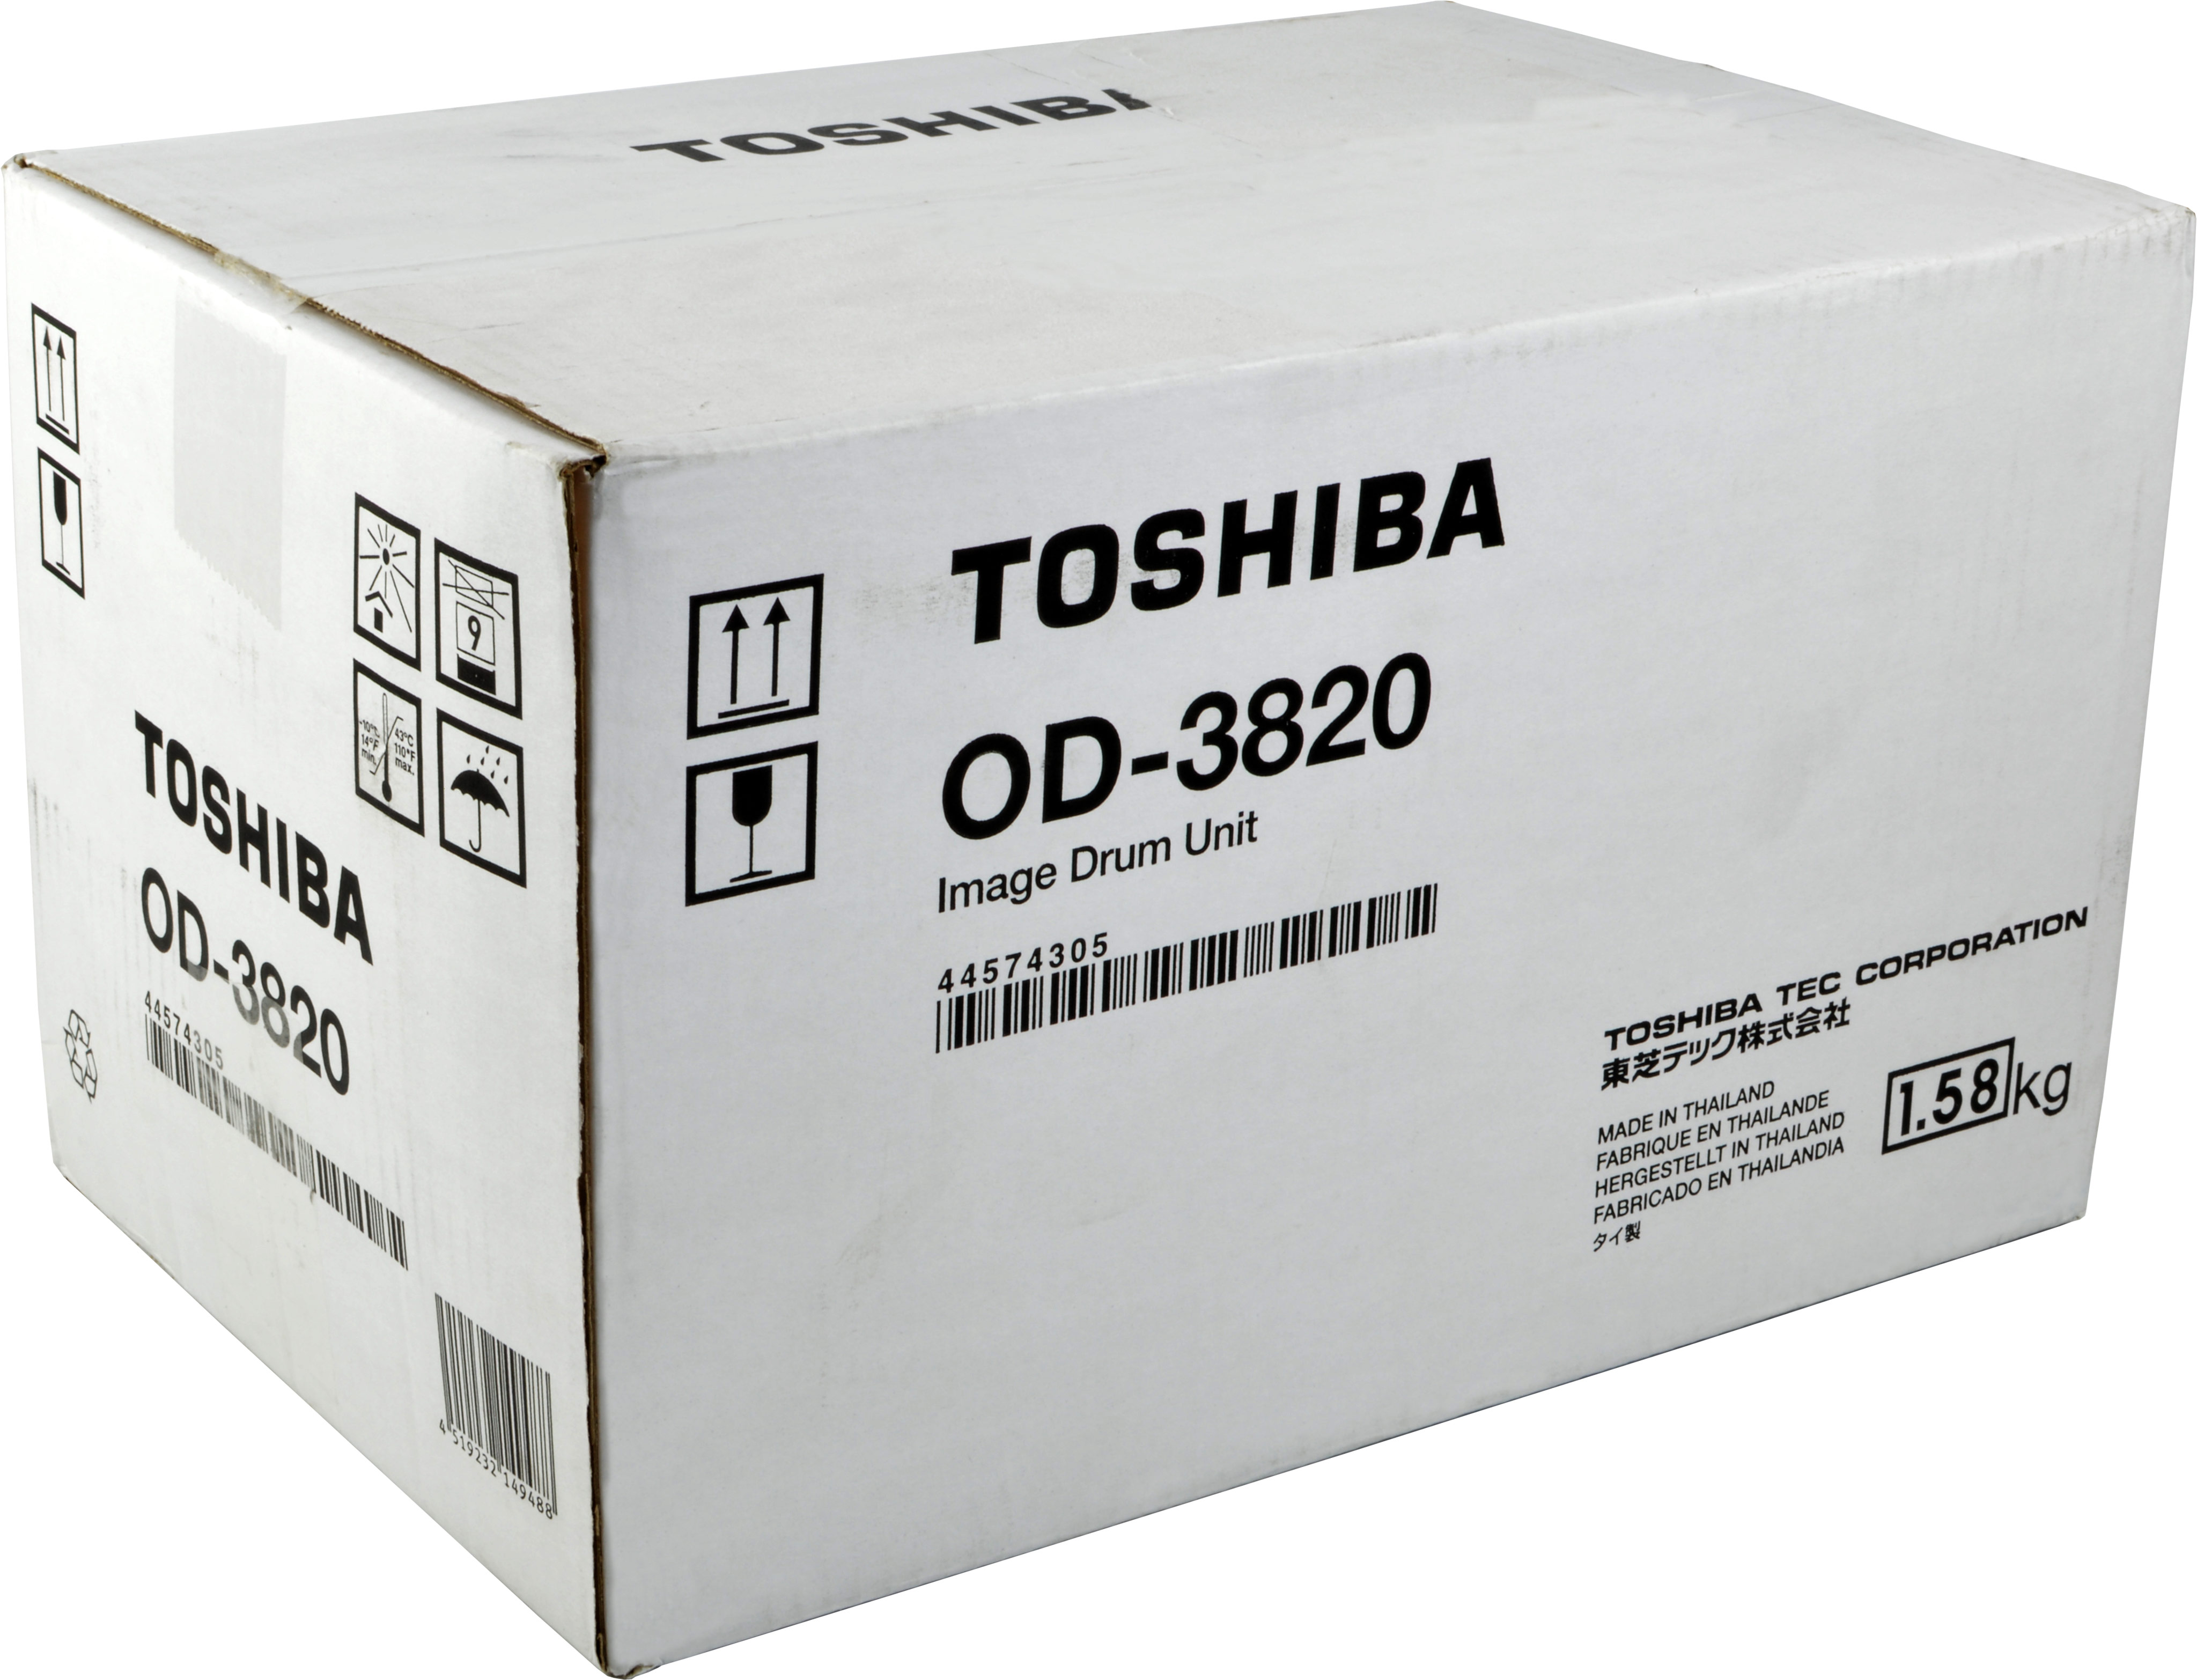 TOSHIBA 44574305 Trommel schwarz (OD-3820)